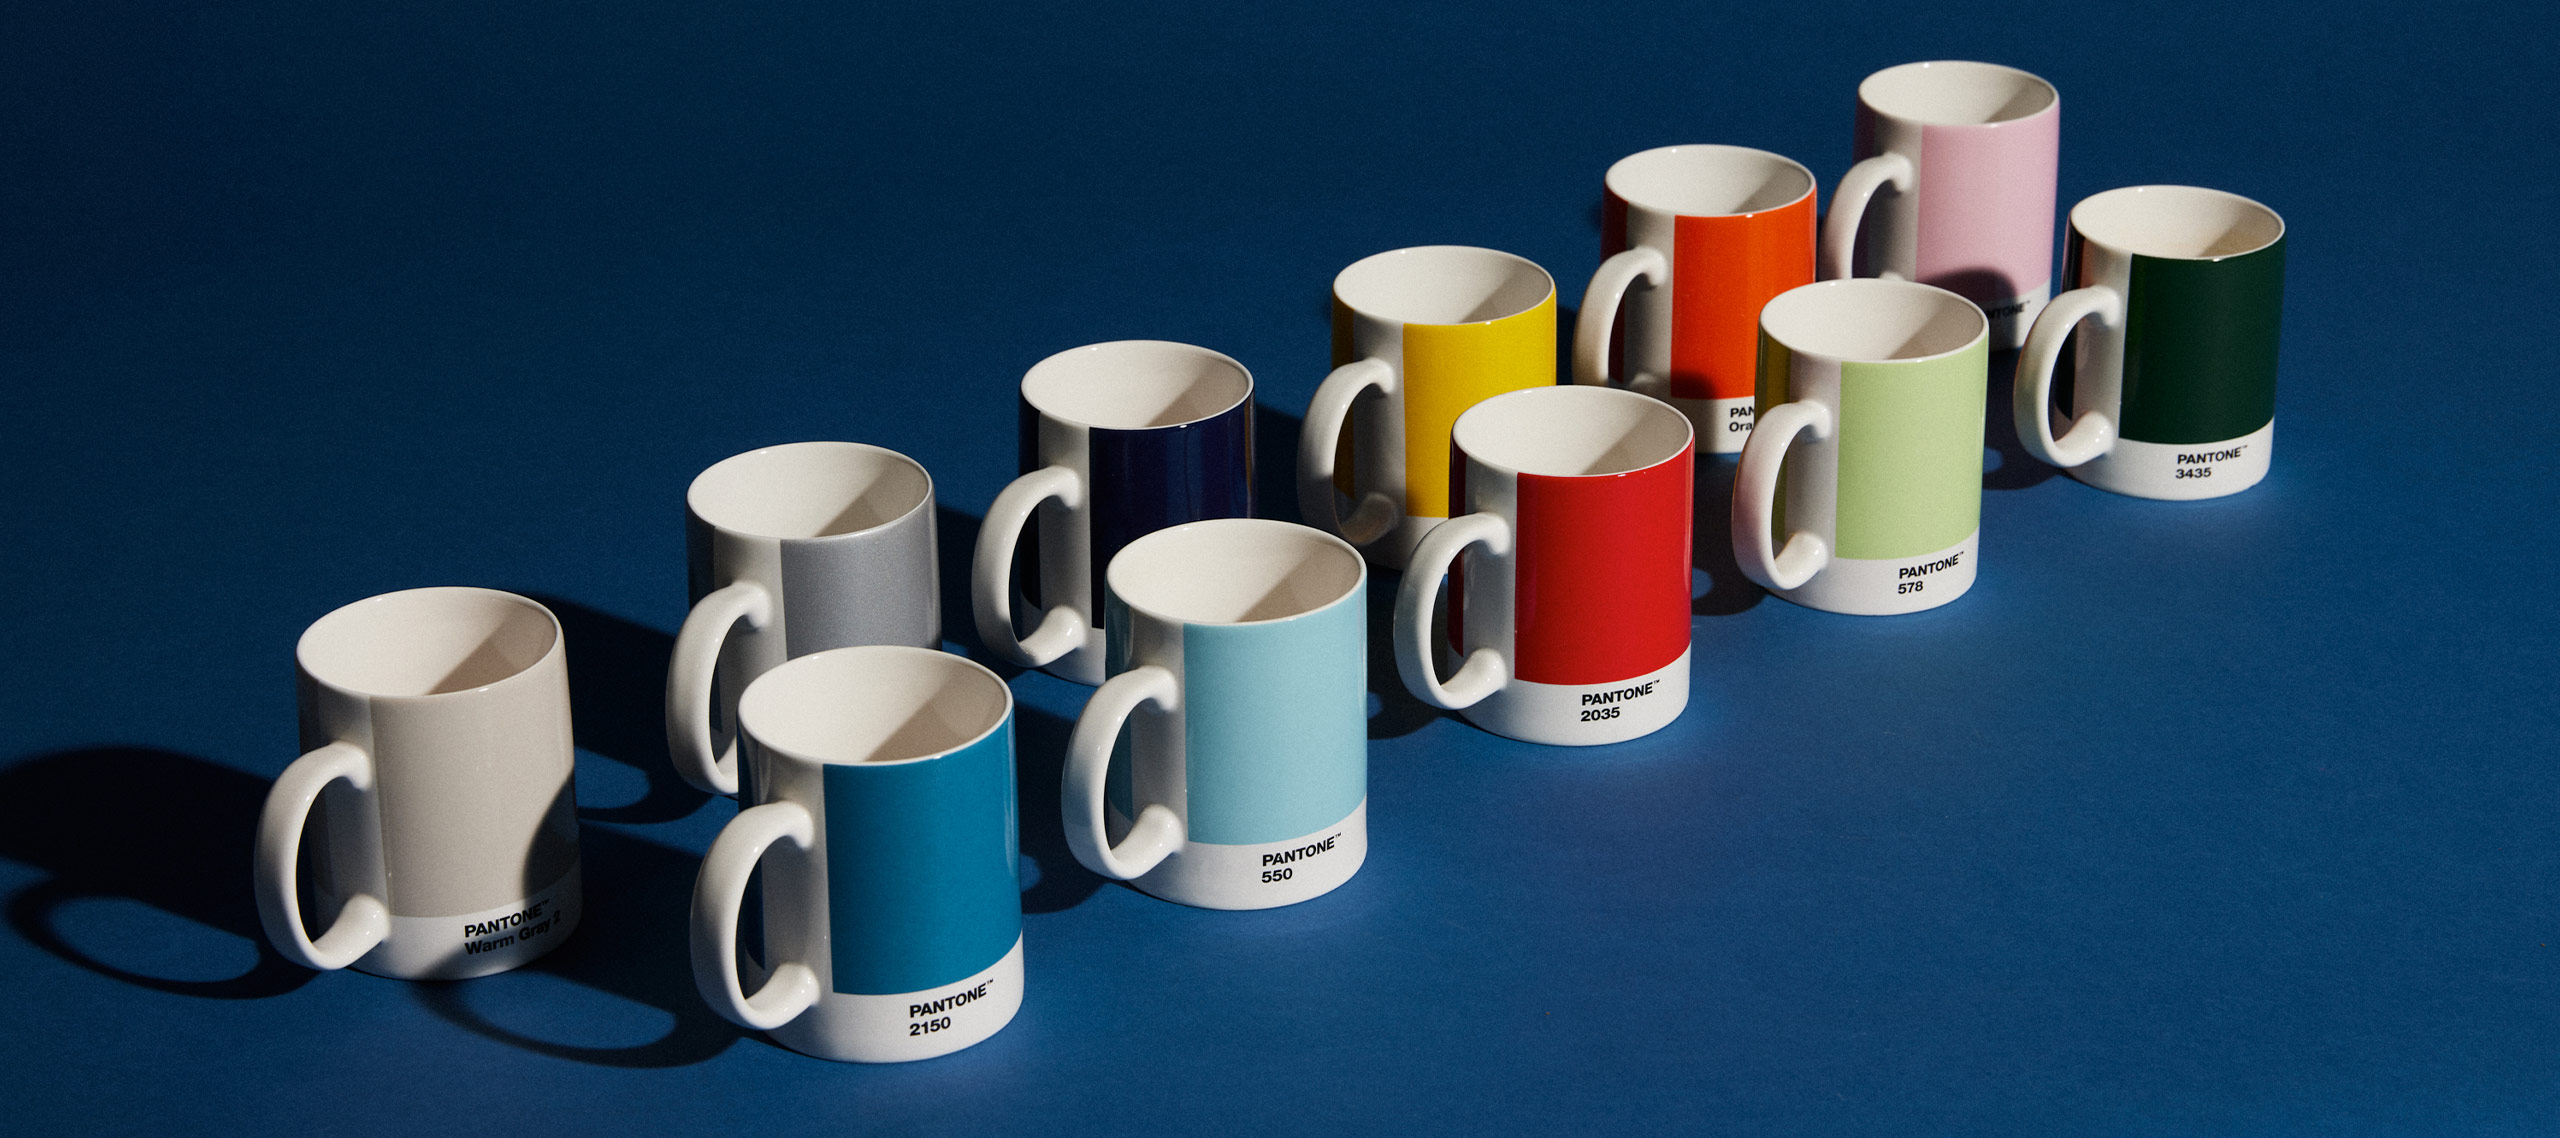 Pantone mugs